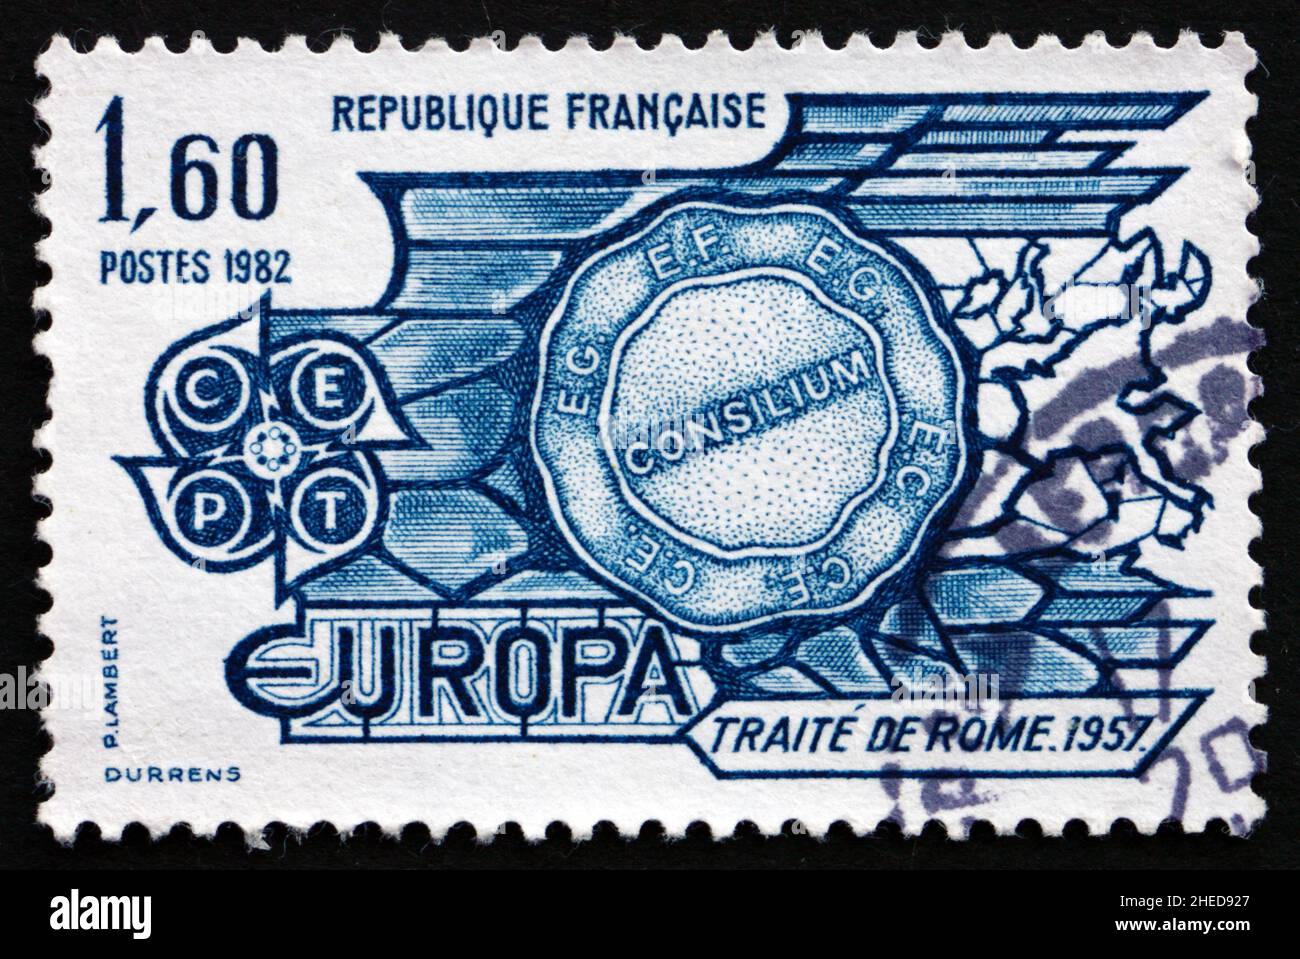 FRANKREICH - UM 1982: Eine in Frankreich gedruckte Briefmarke zeigt den Vertrag von Rom, 1957, 25th. Jahrestag, um 1982 Stockfoto